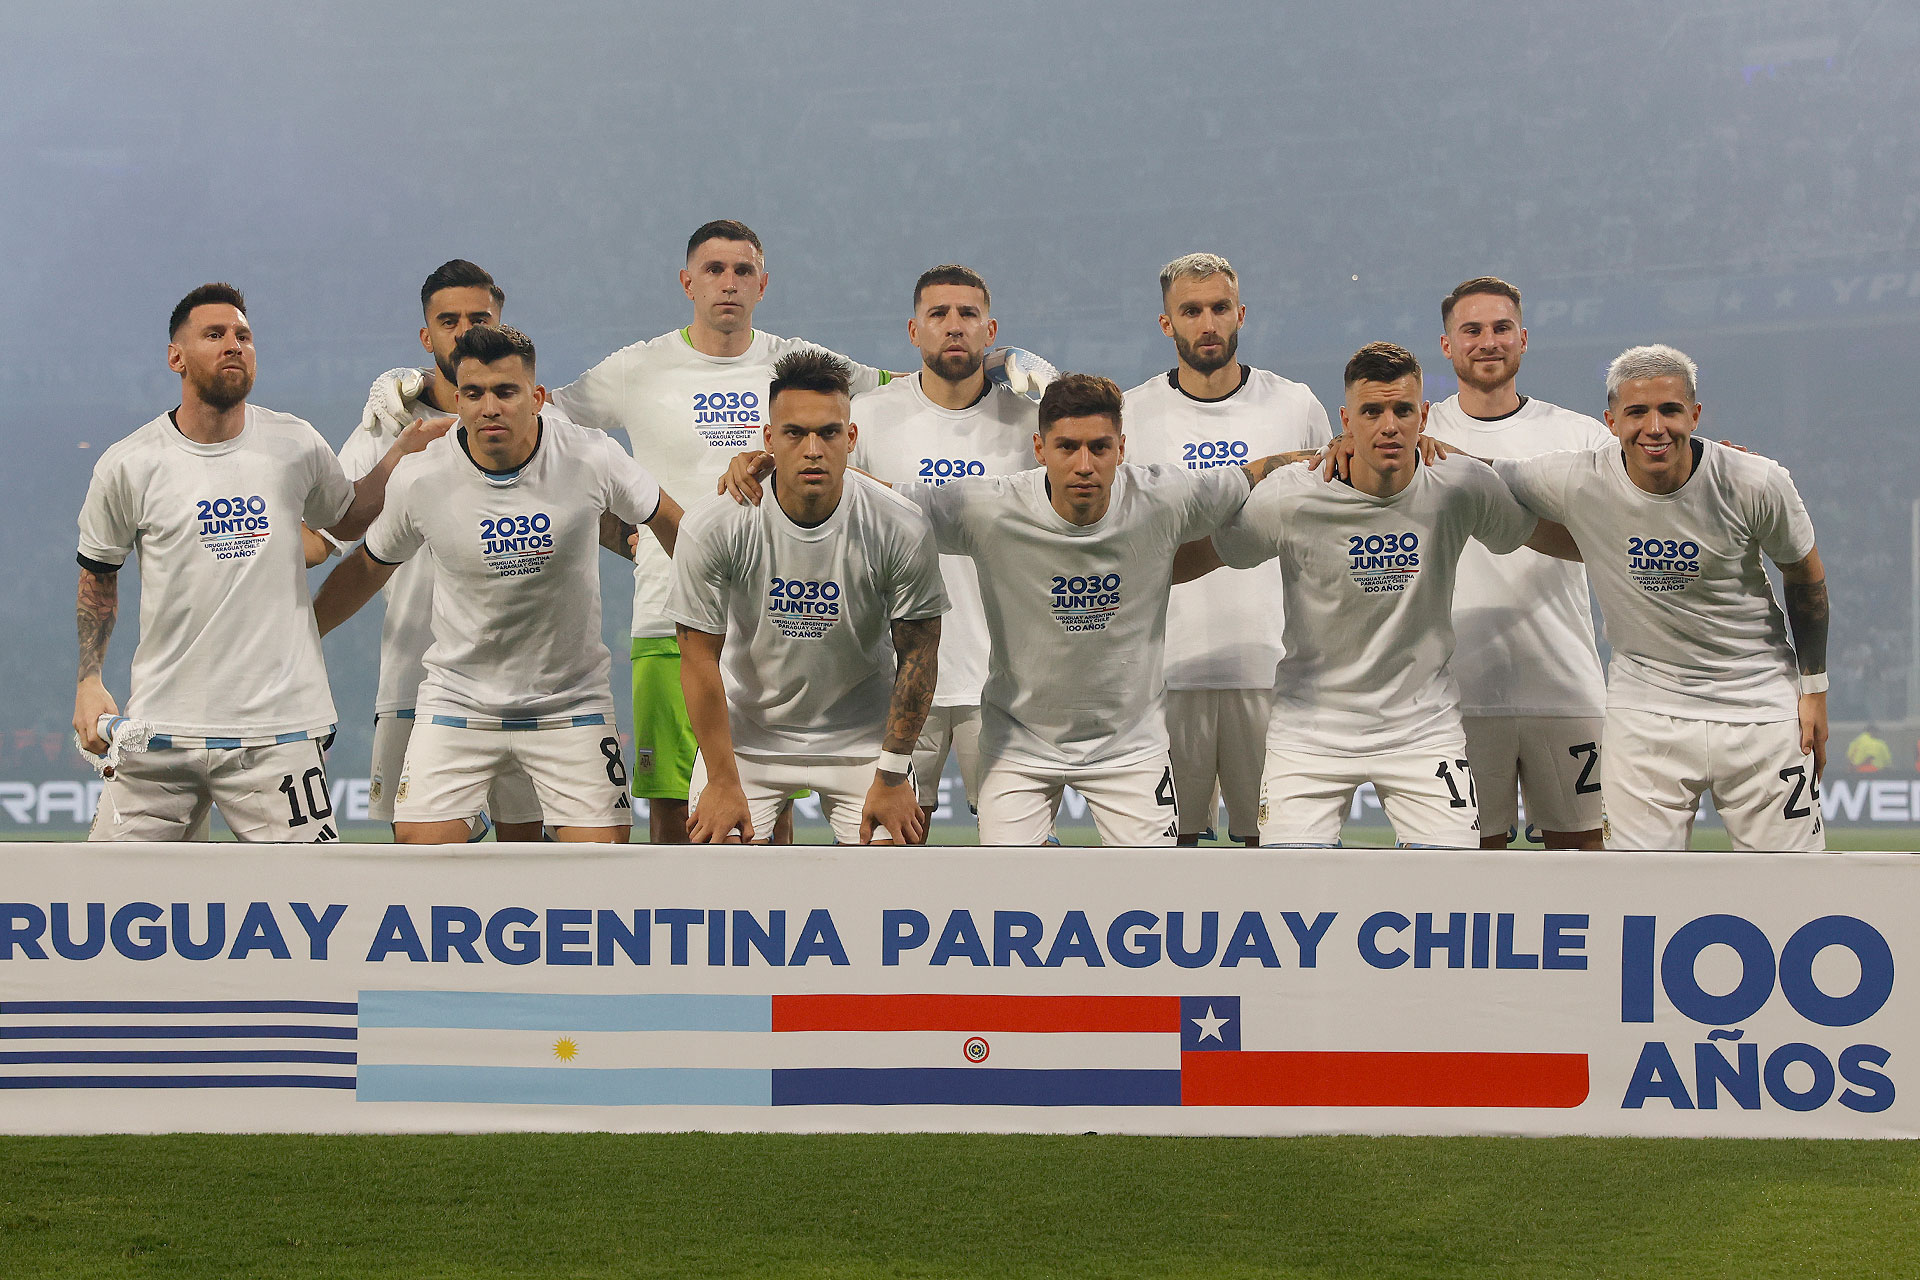 La selección argentina salió con una remera de la candidatura para el Mundial 2030 en el amistoso ante Curazao (Foto: Mario Sar)